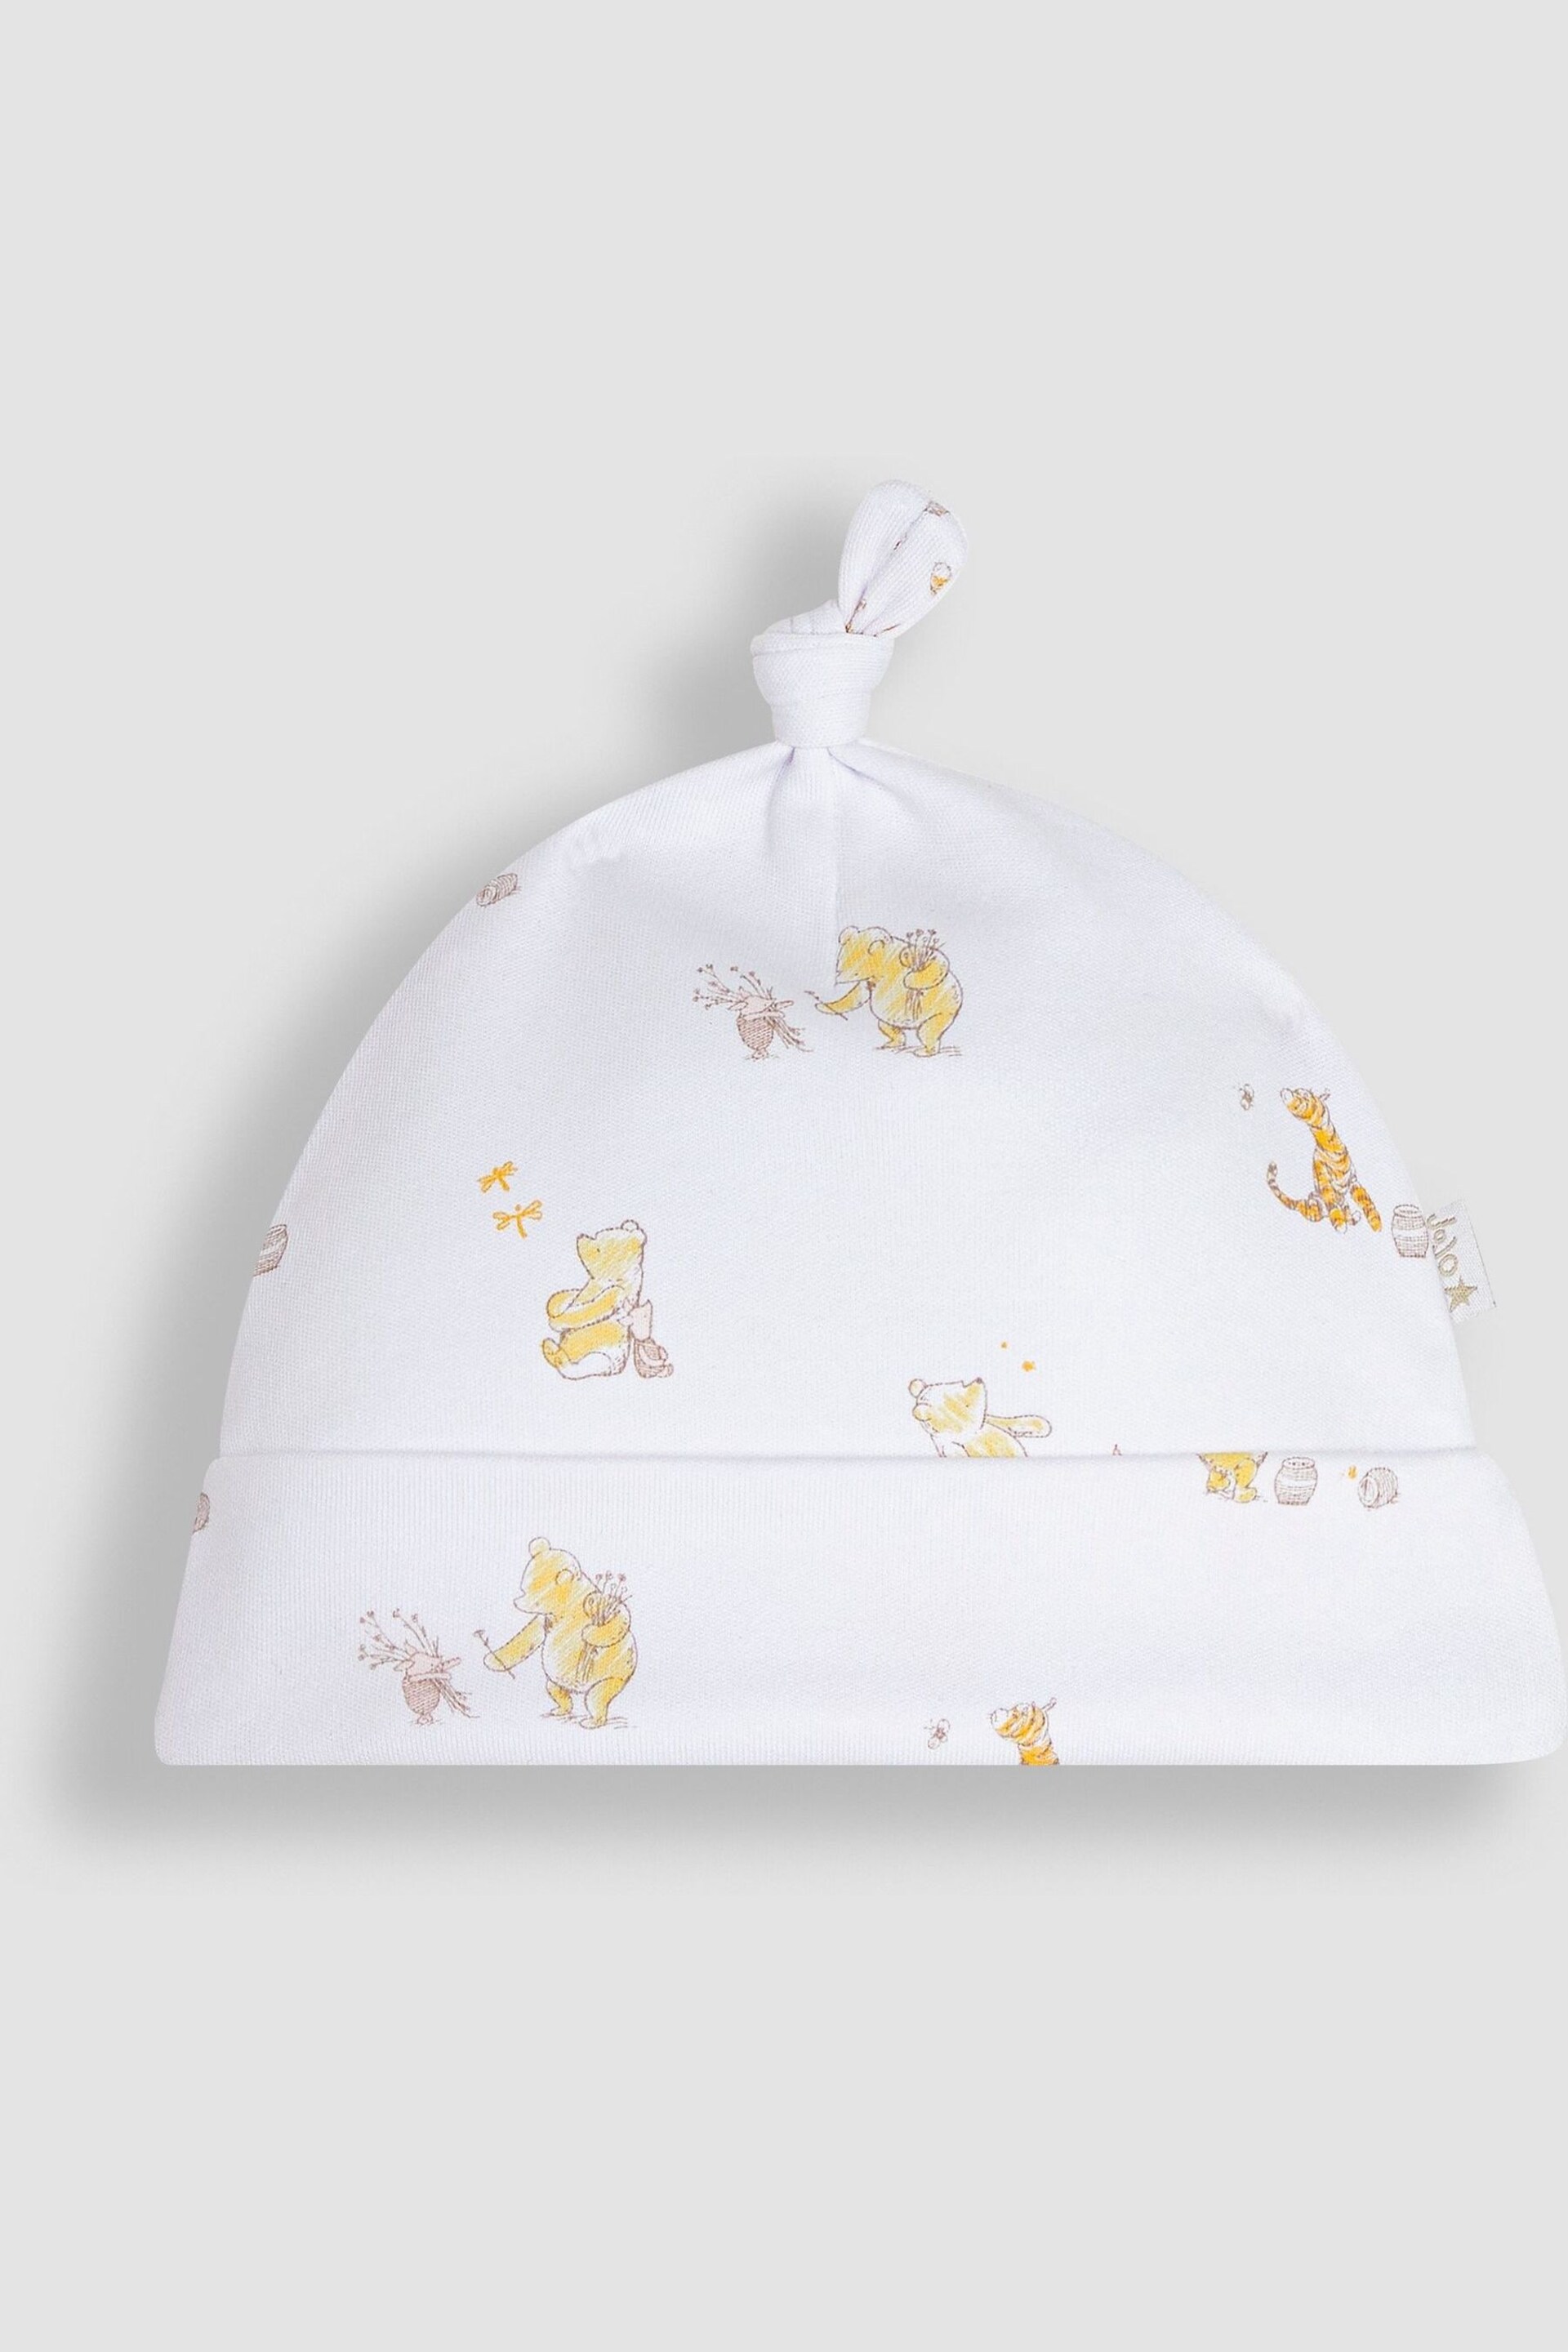 JoJo Maman Bébé Cream Winnie The Pooh Print Sleepsuit & Hat Set - Image 5 of 8